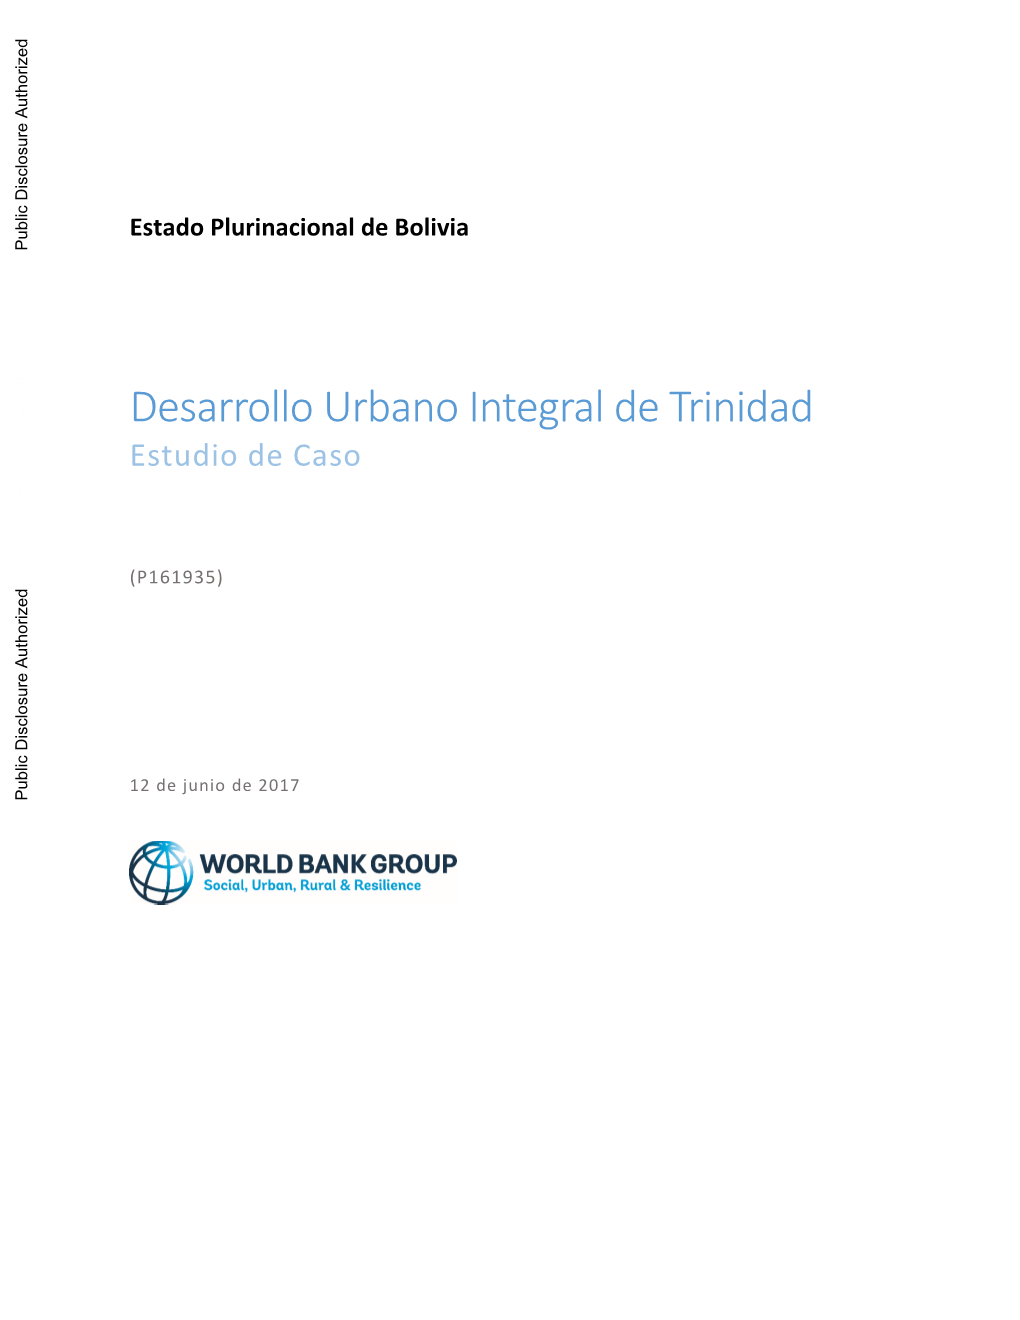 Desarrollo Urbano Integral De Trinidad Estudio De Caso